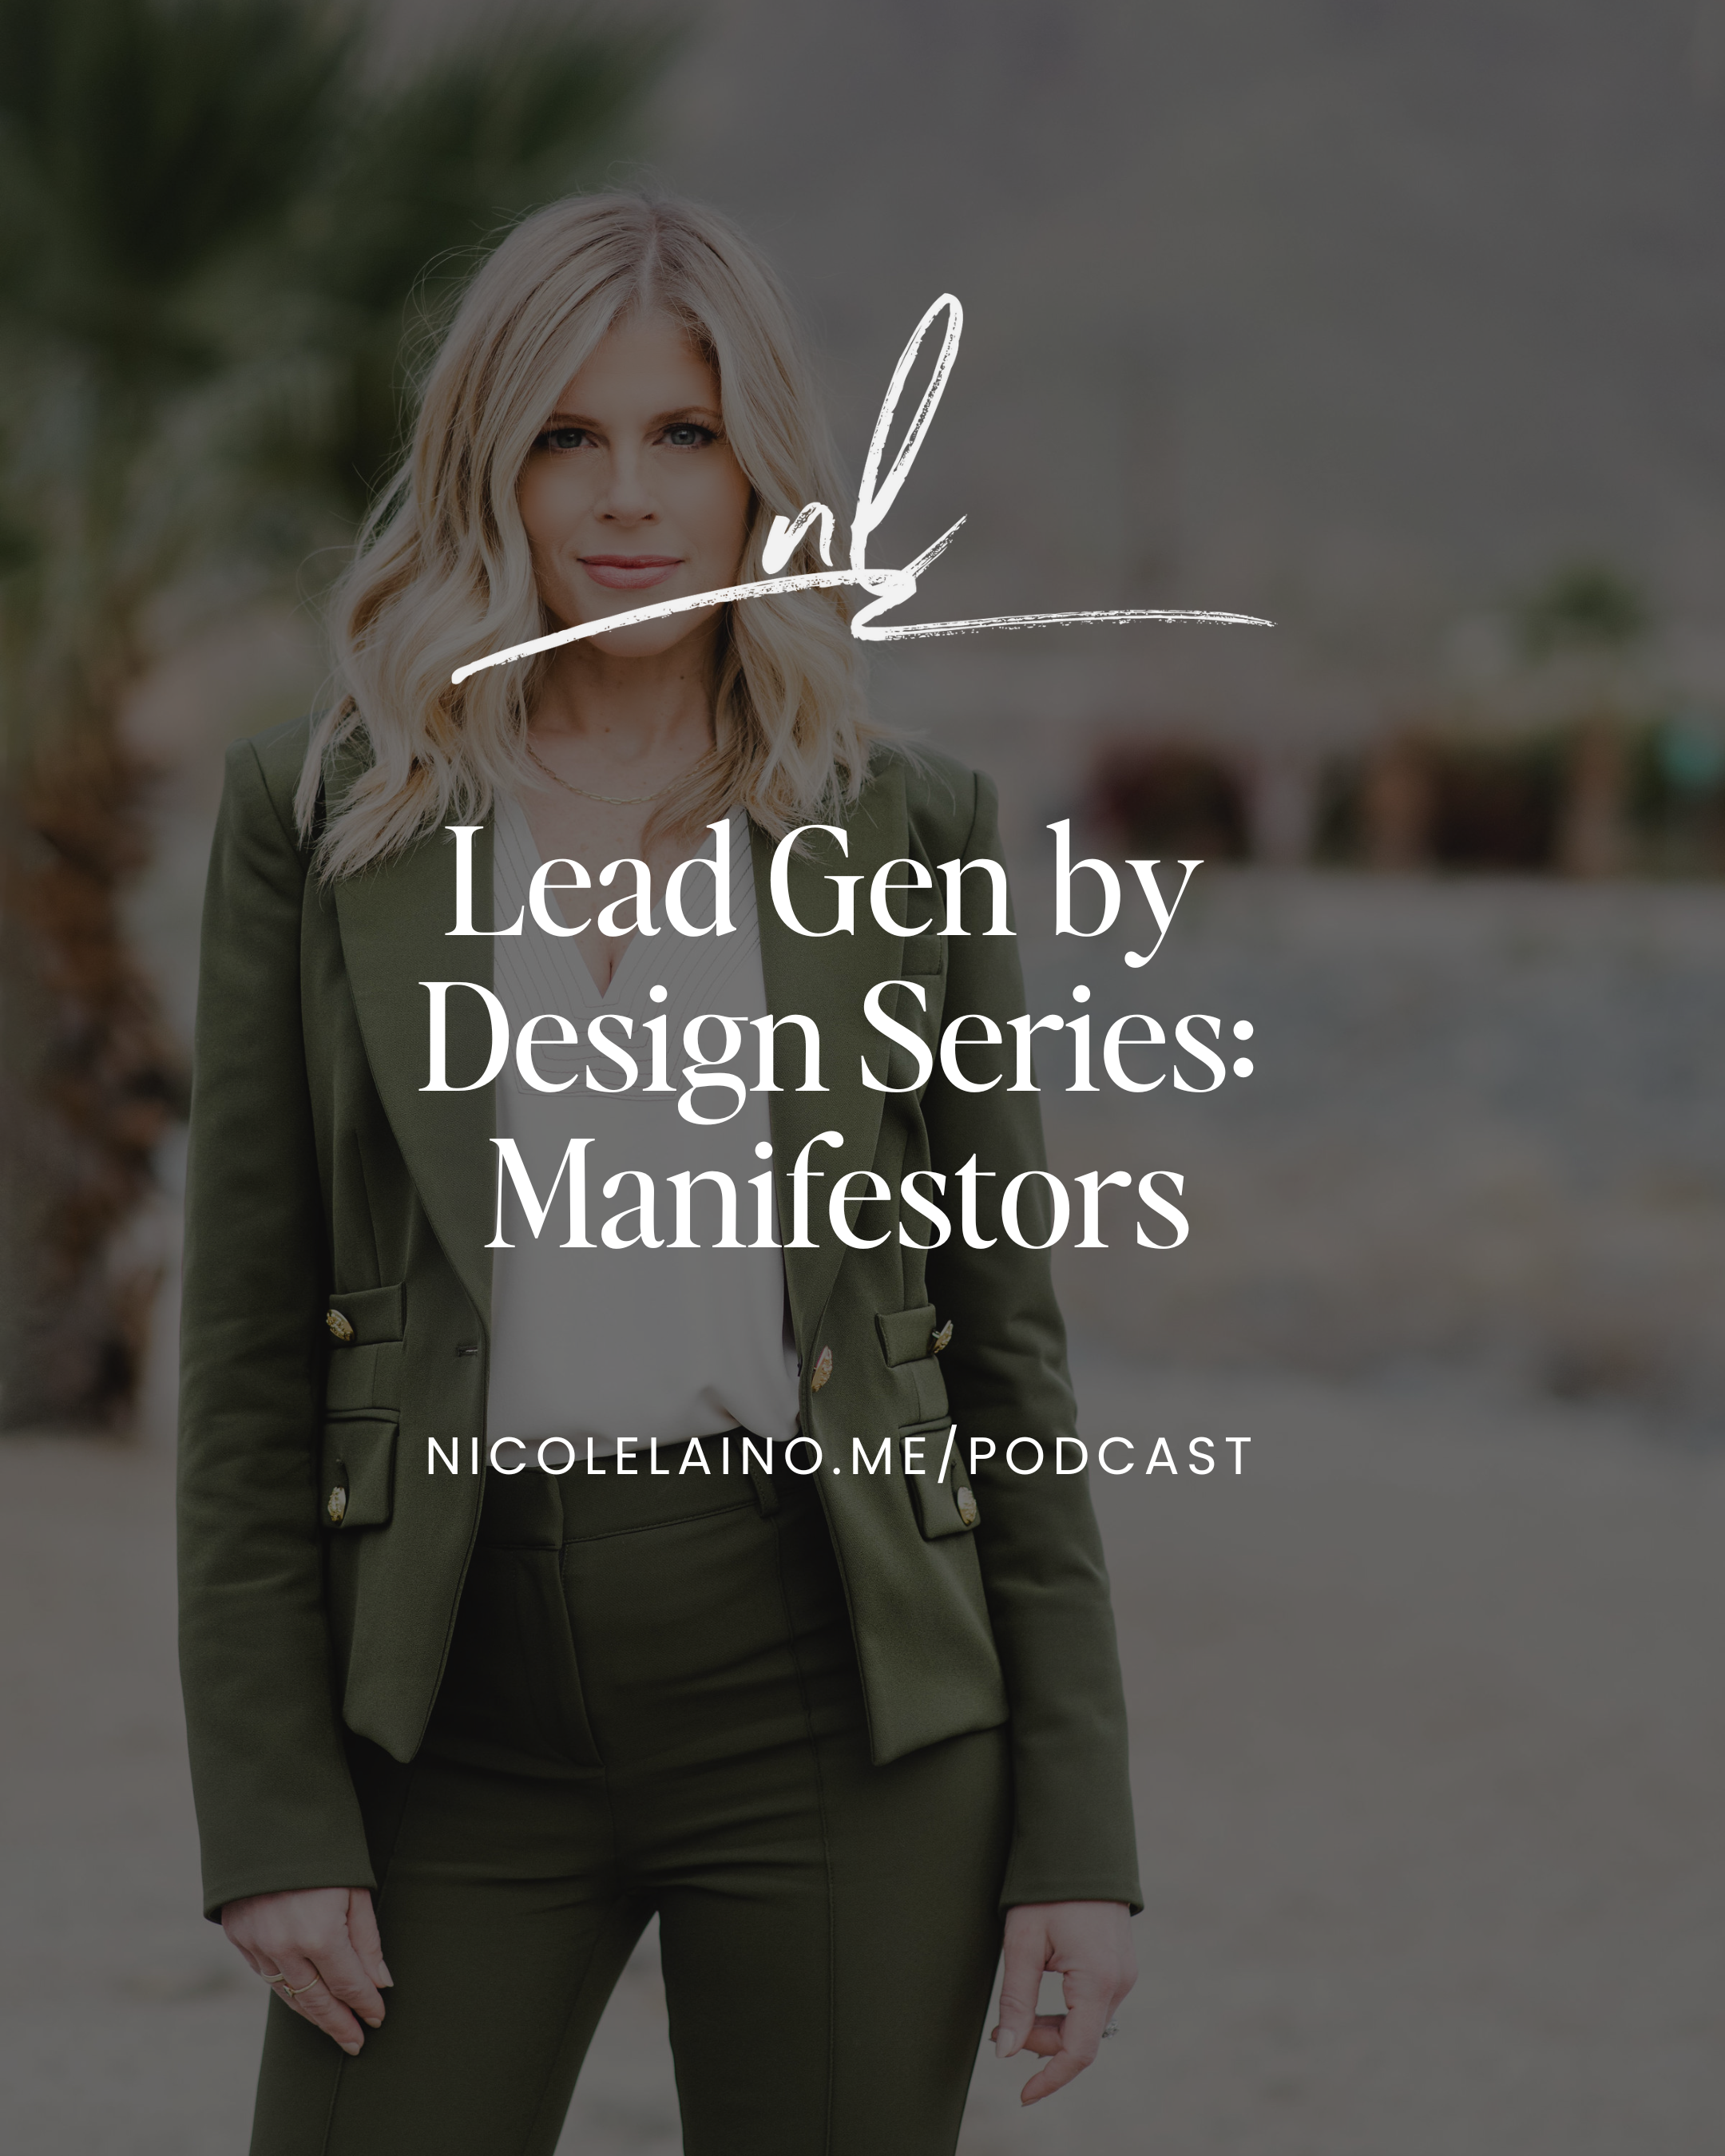 Lead Gen by Design Series: Manifestors